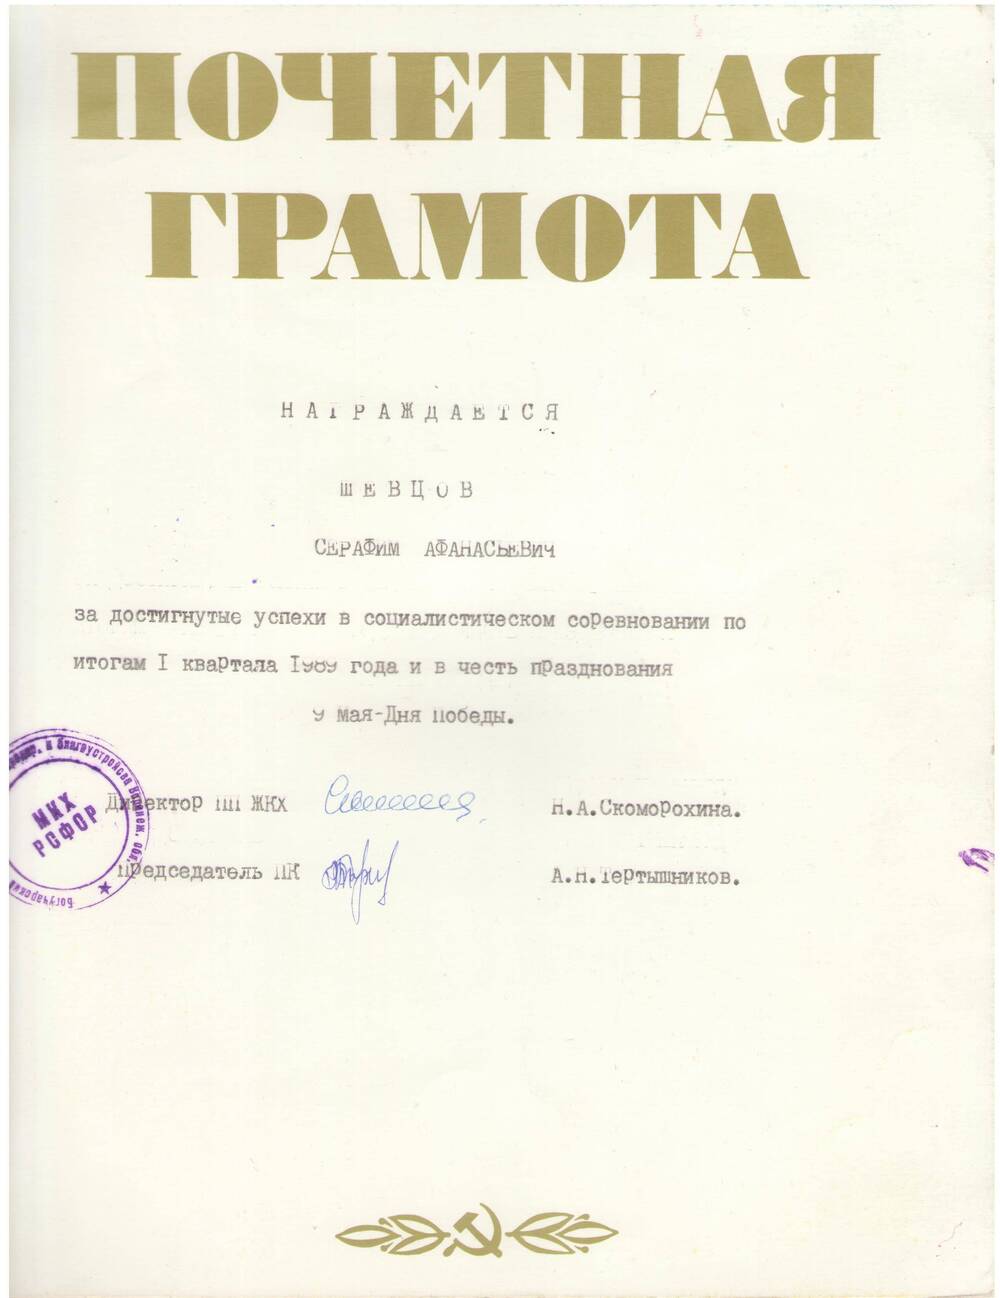 Почетная грамота Шевцову Серафиму Афанасьевичу по итогам 1 квартала 1989 года.